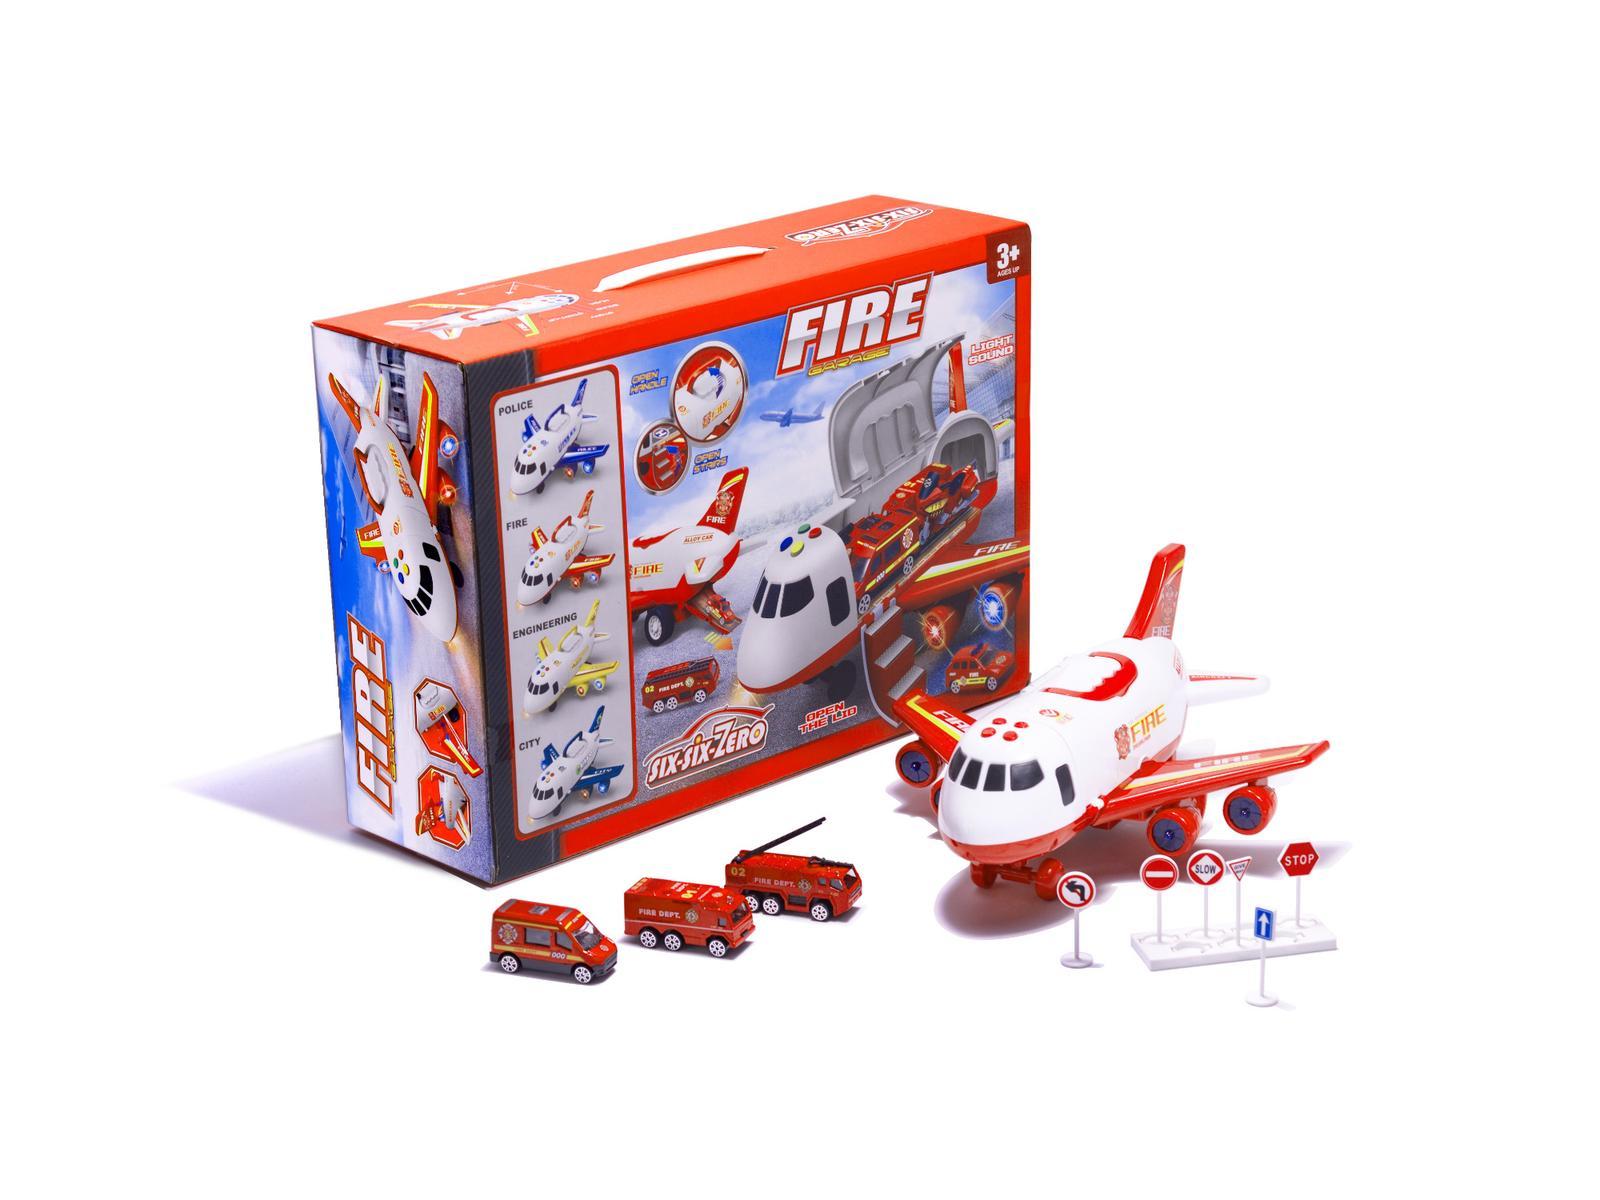 Transporter samolot + 3 pojazdy straż pożarna zabawka dla dzieci czerwona 41,5x31,5x14 cm nr. 2